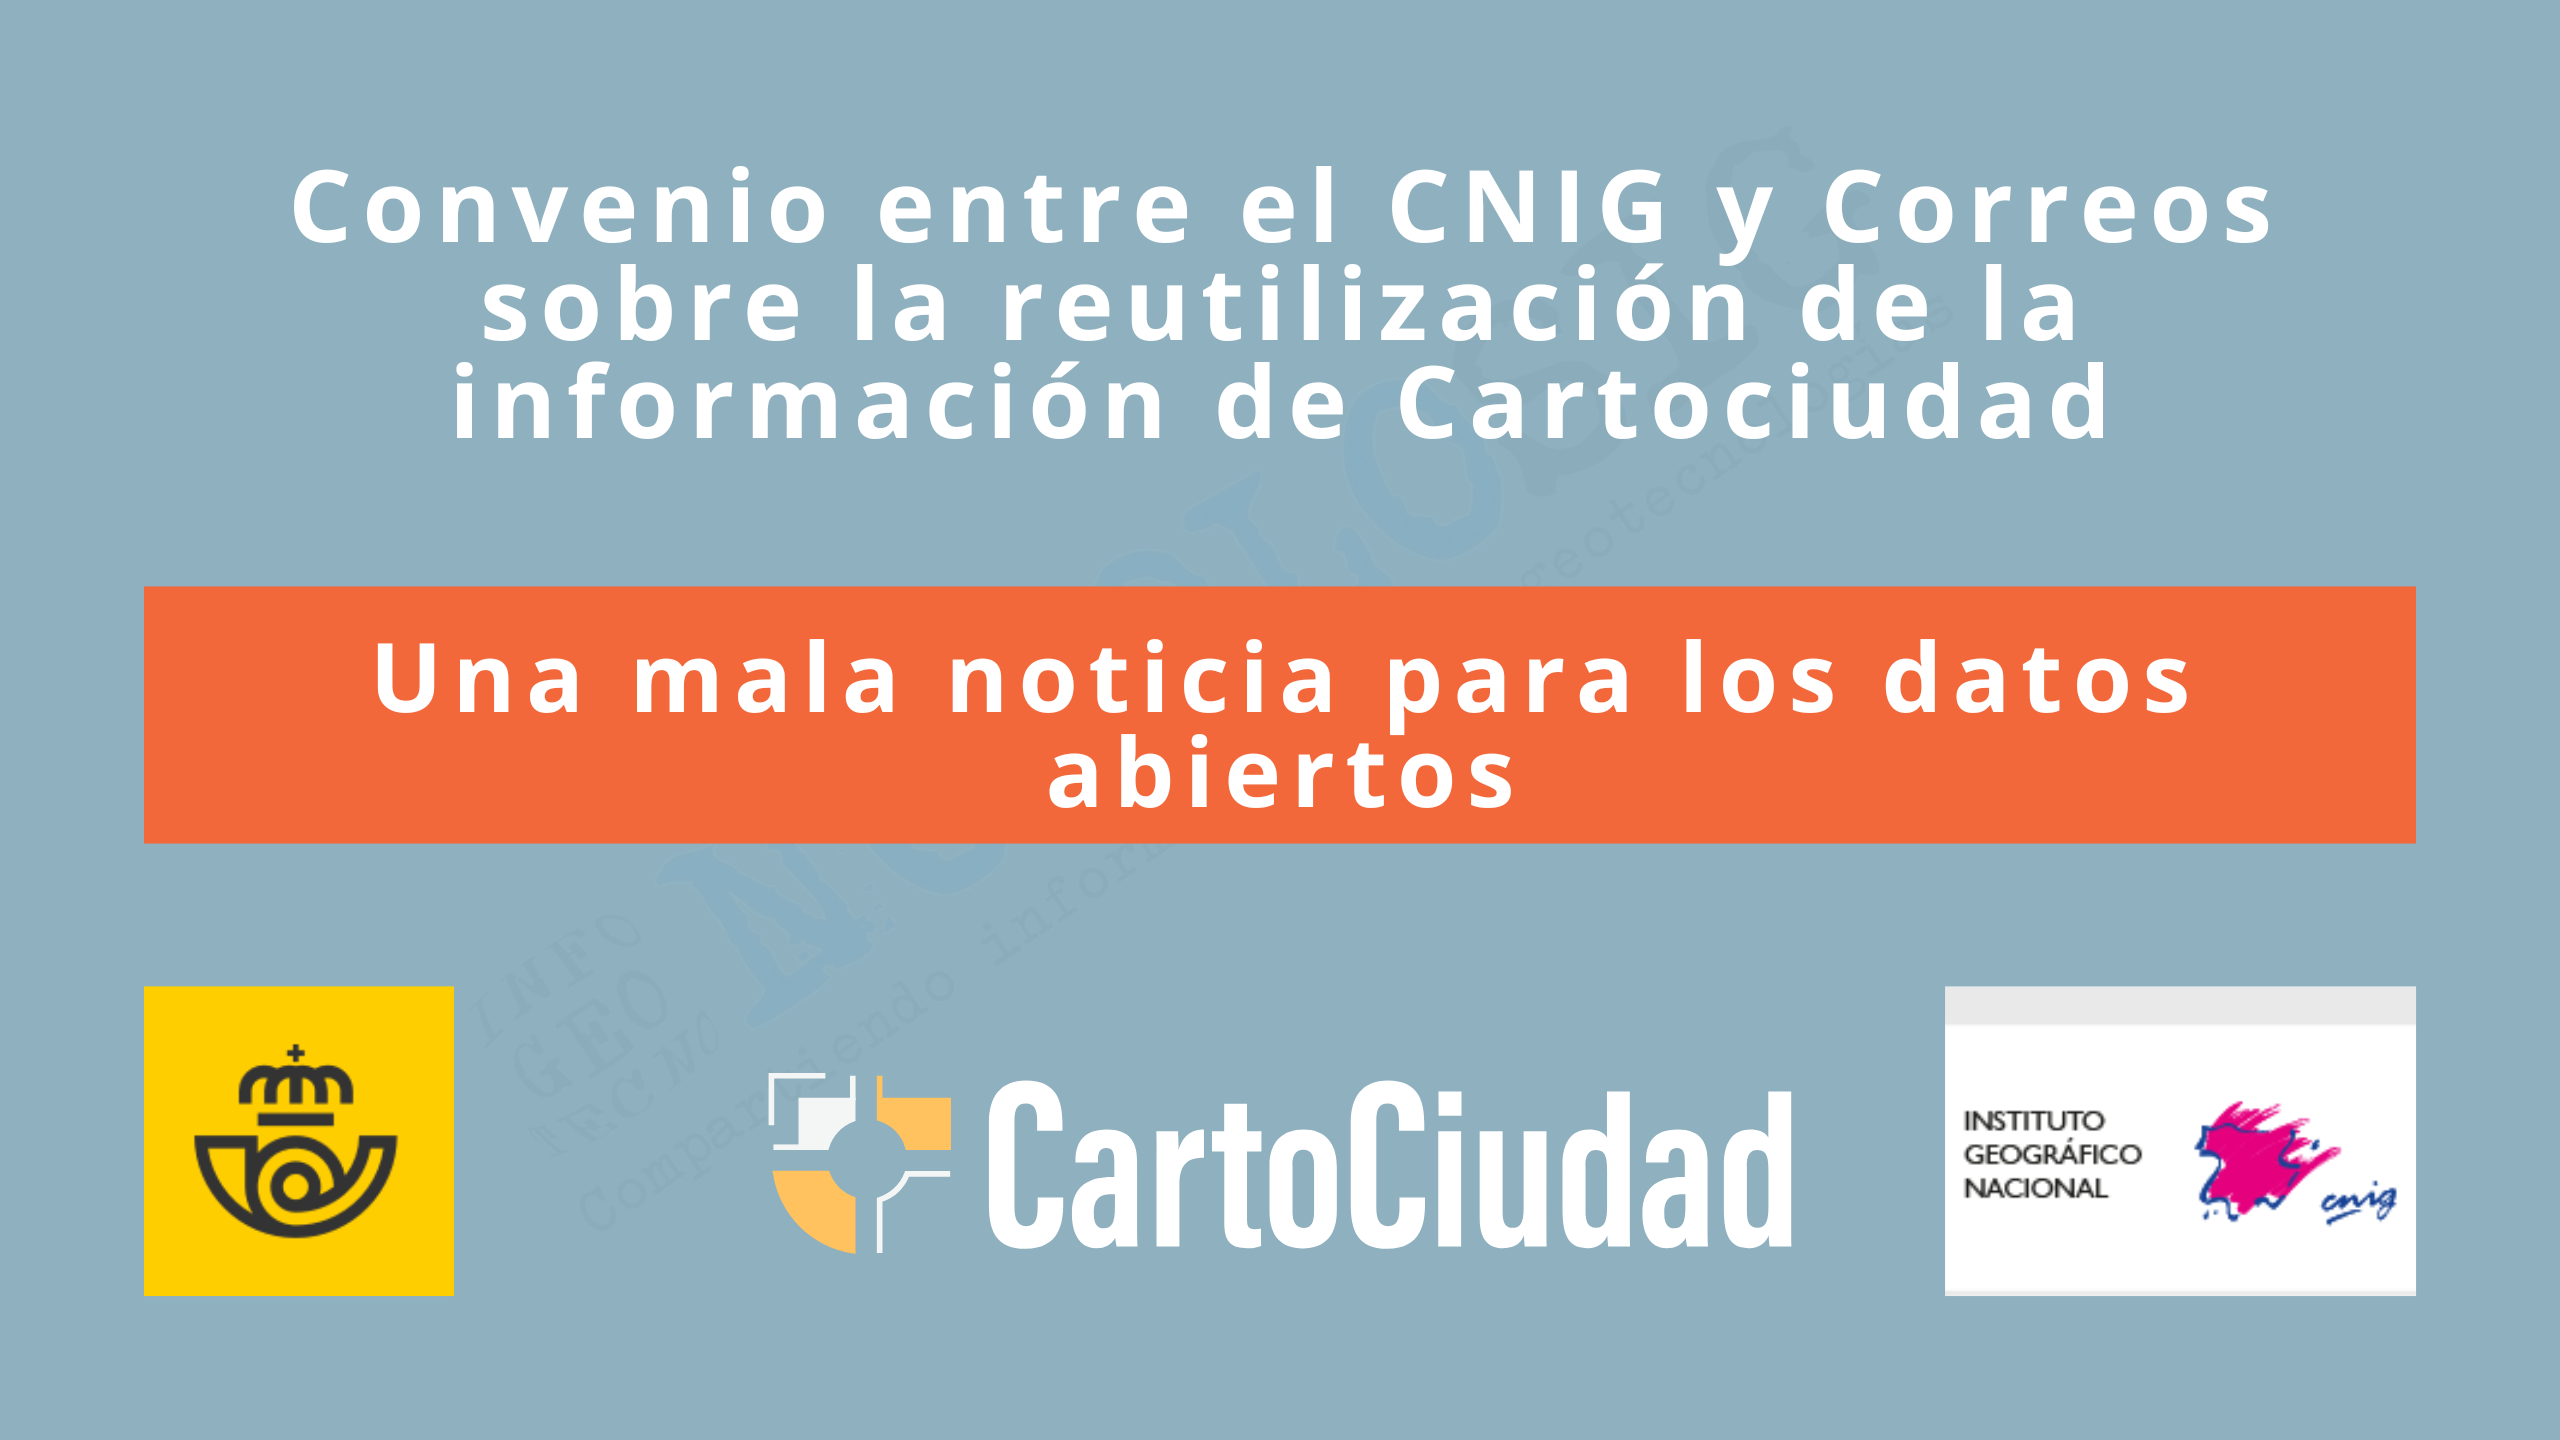 Convenio entre el CNIG y Correos sobre la reutilización de la información de Cartociudad. Una mala noticia para los datos abiertos